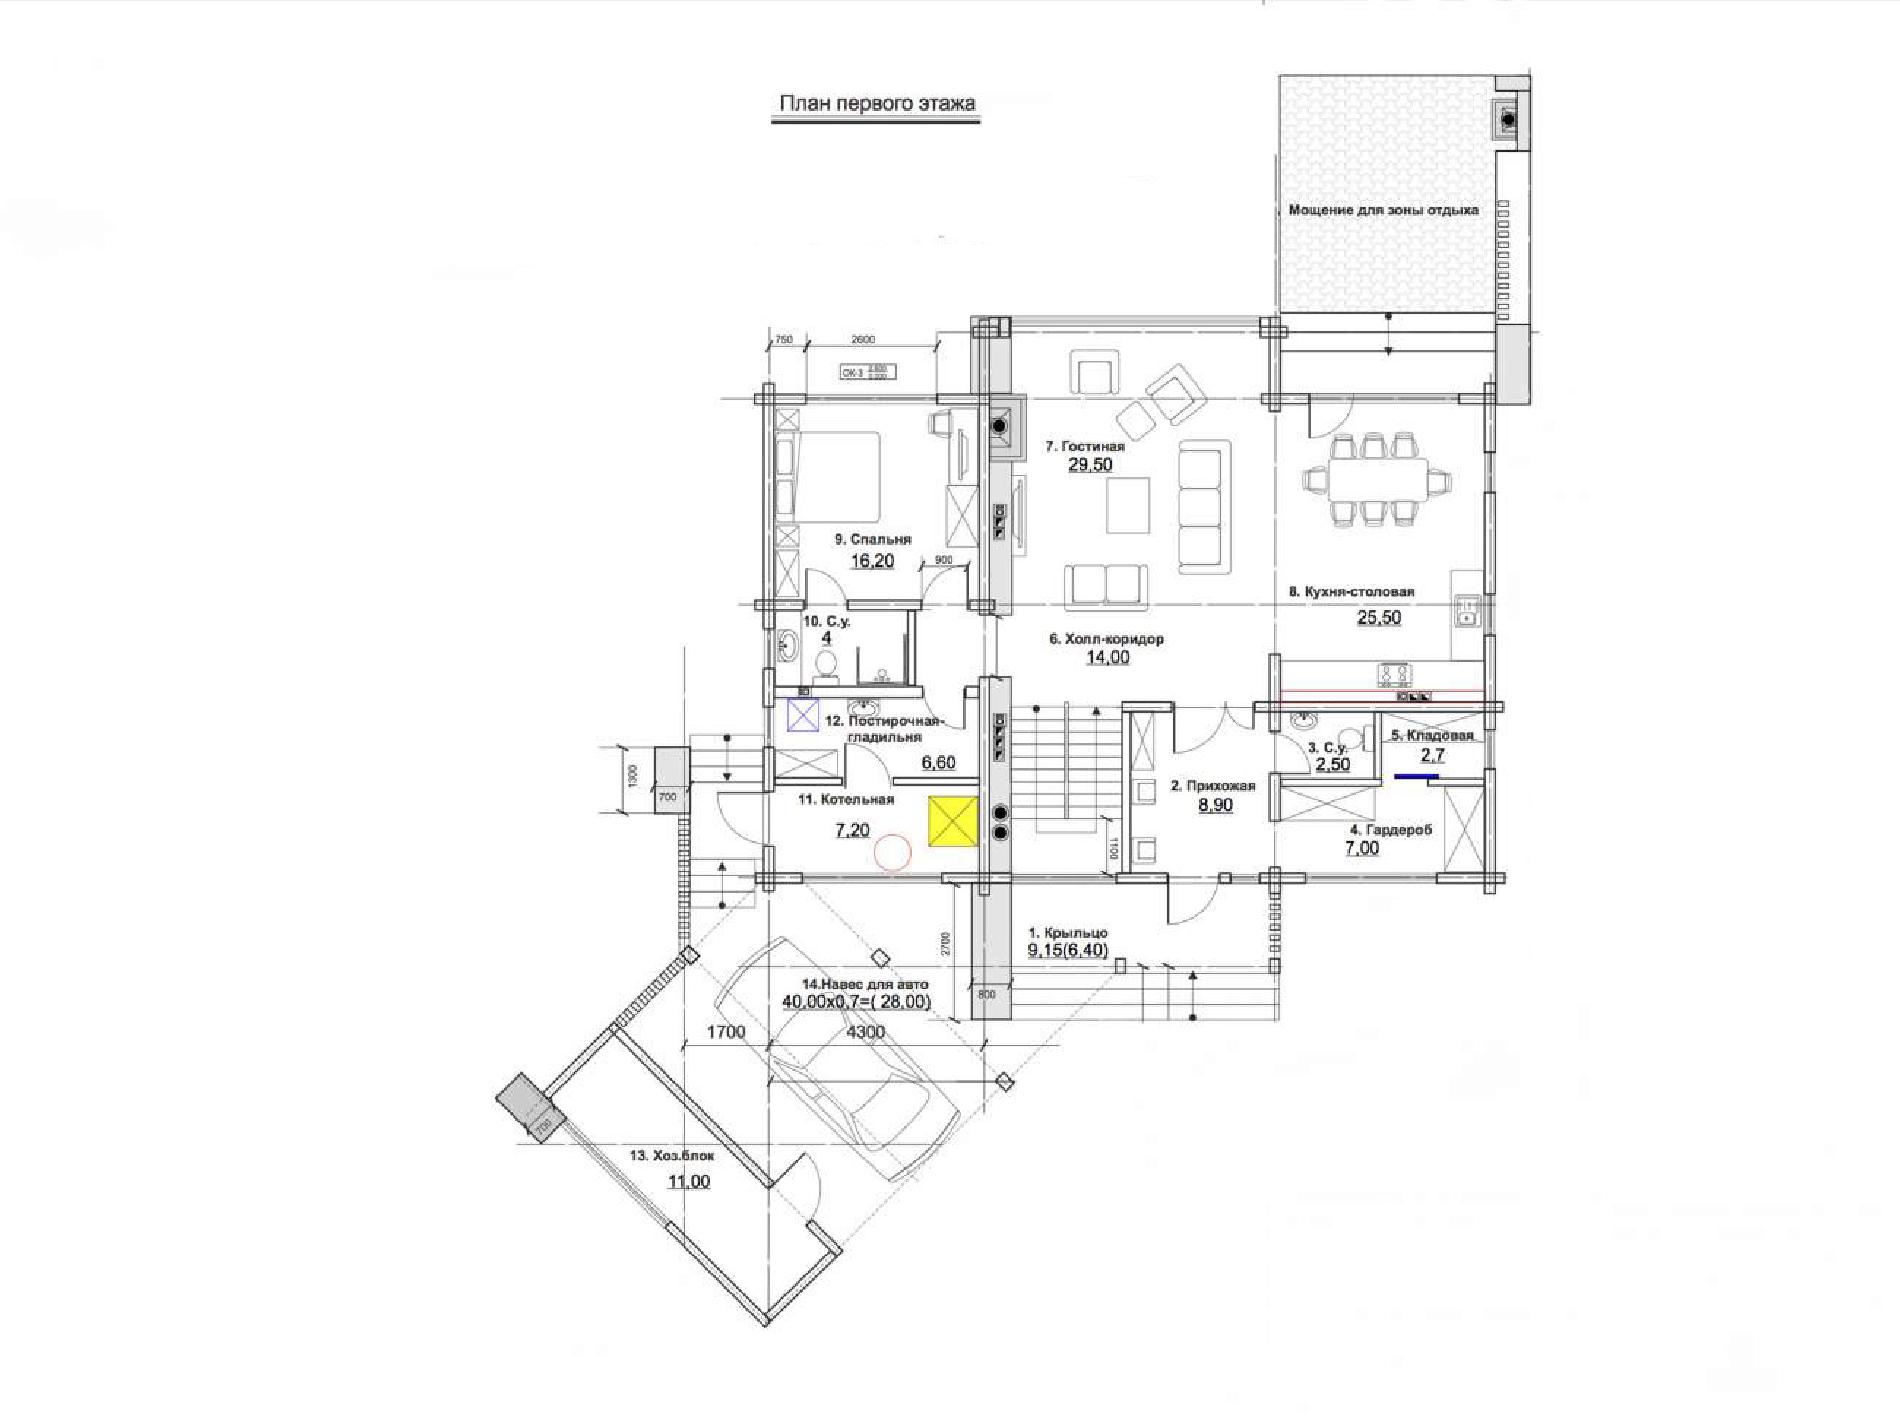 Планировка проекта дома №rh-319 rh-319 (1)p.jpg